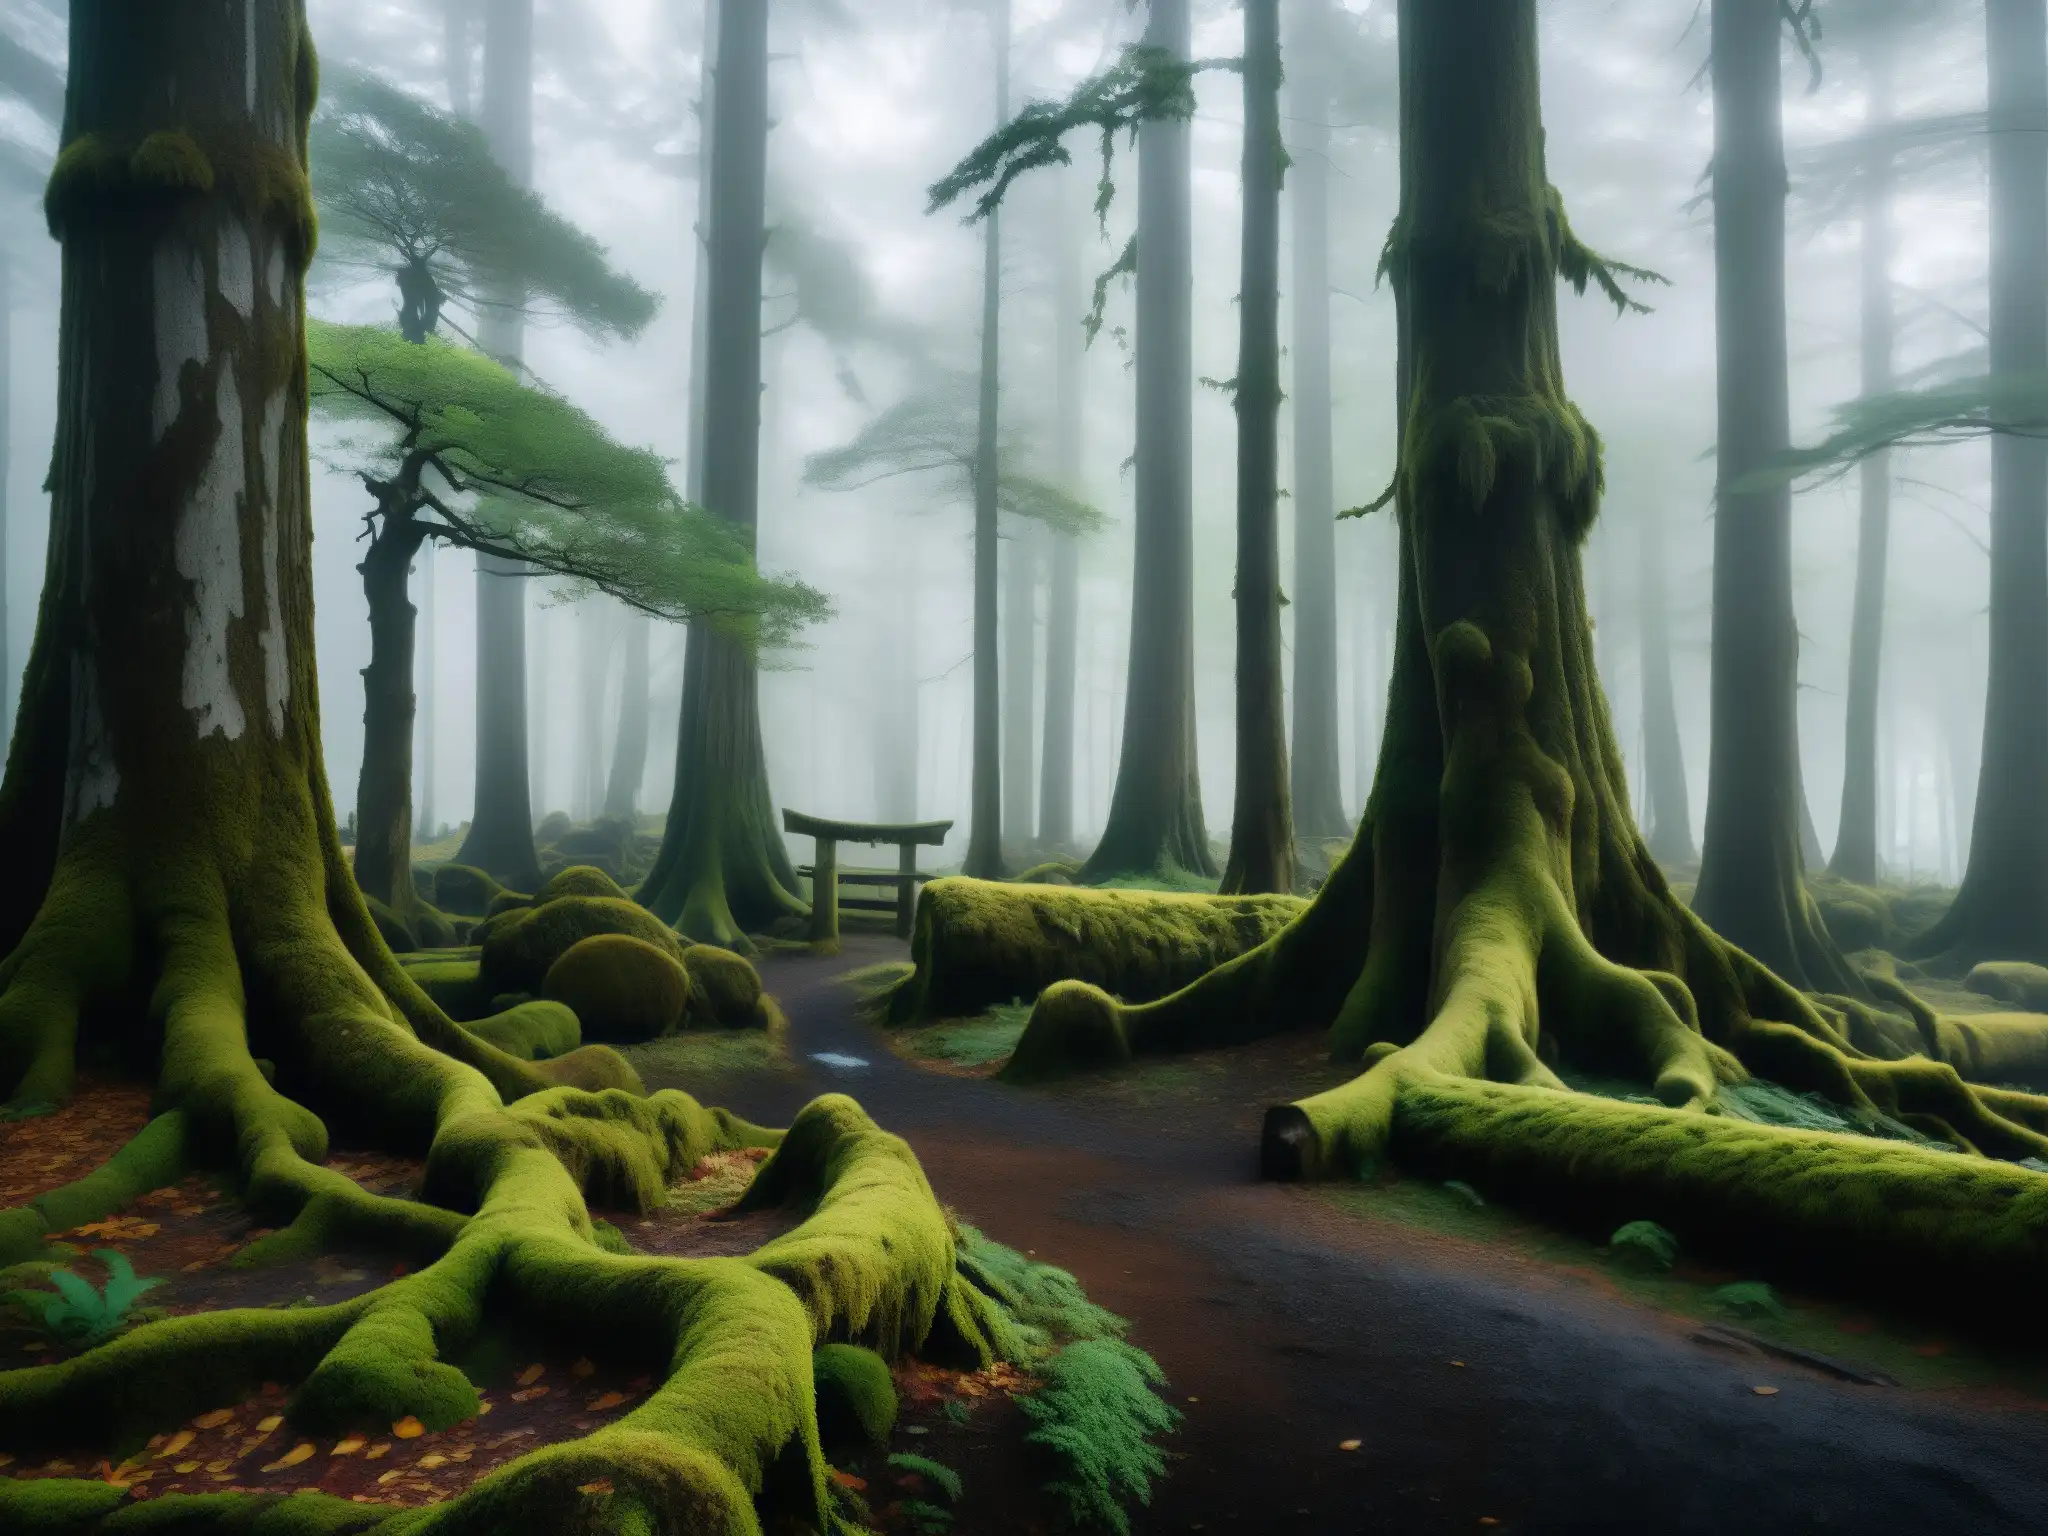 Imagen de un bosque misterioso en Japón, con árboles antiguos cubiertos de musgo y niebla, evocando leyendas urbanas japonesas y videojuegos